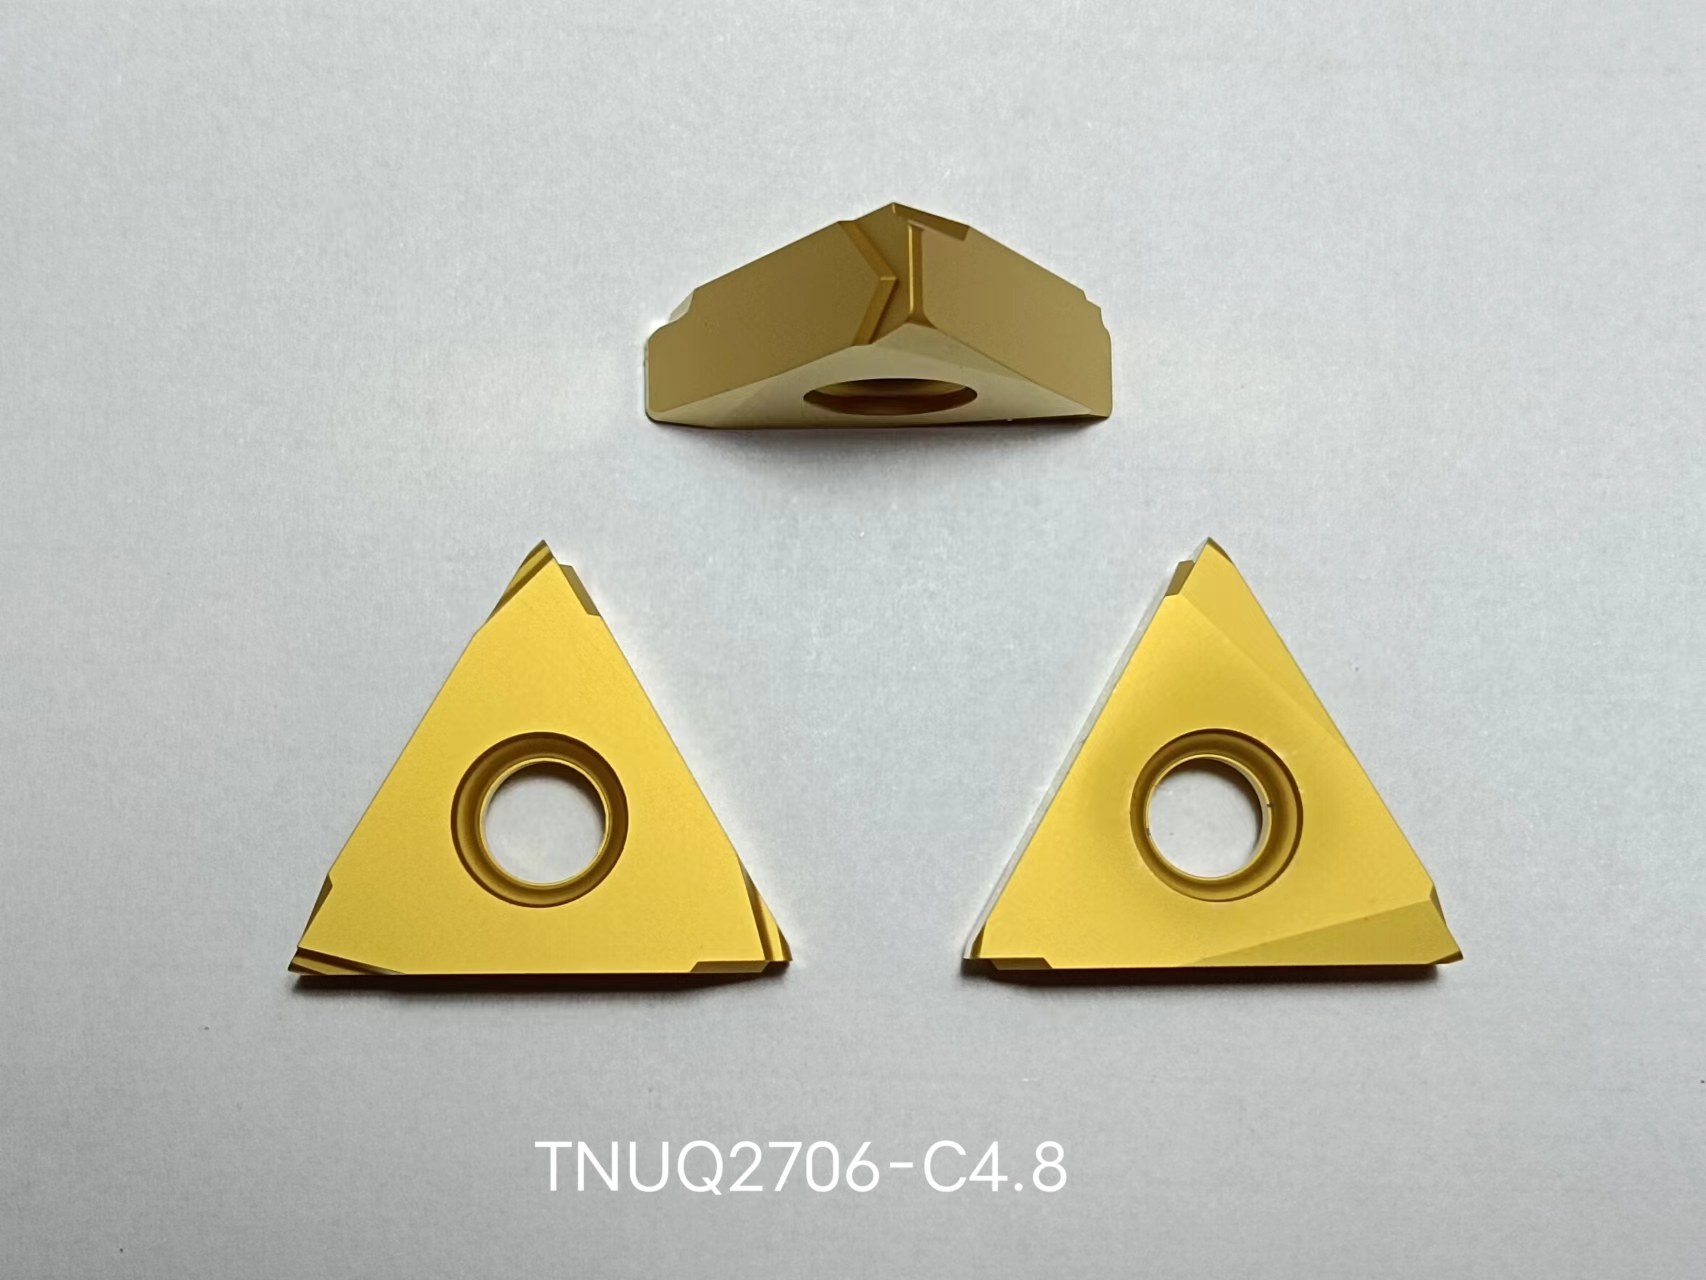 TNUQ2706-C4.8